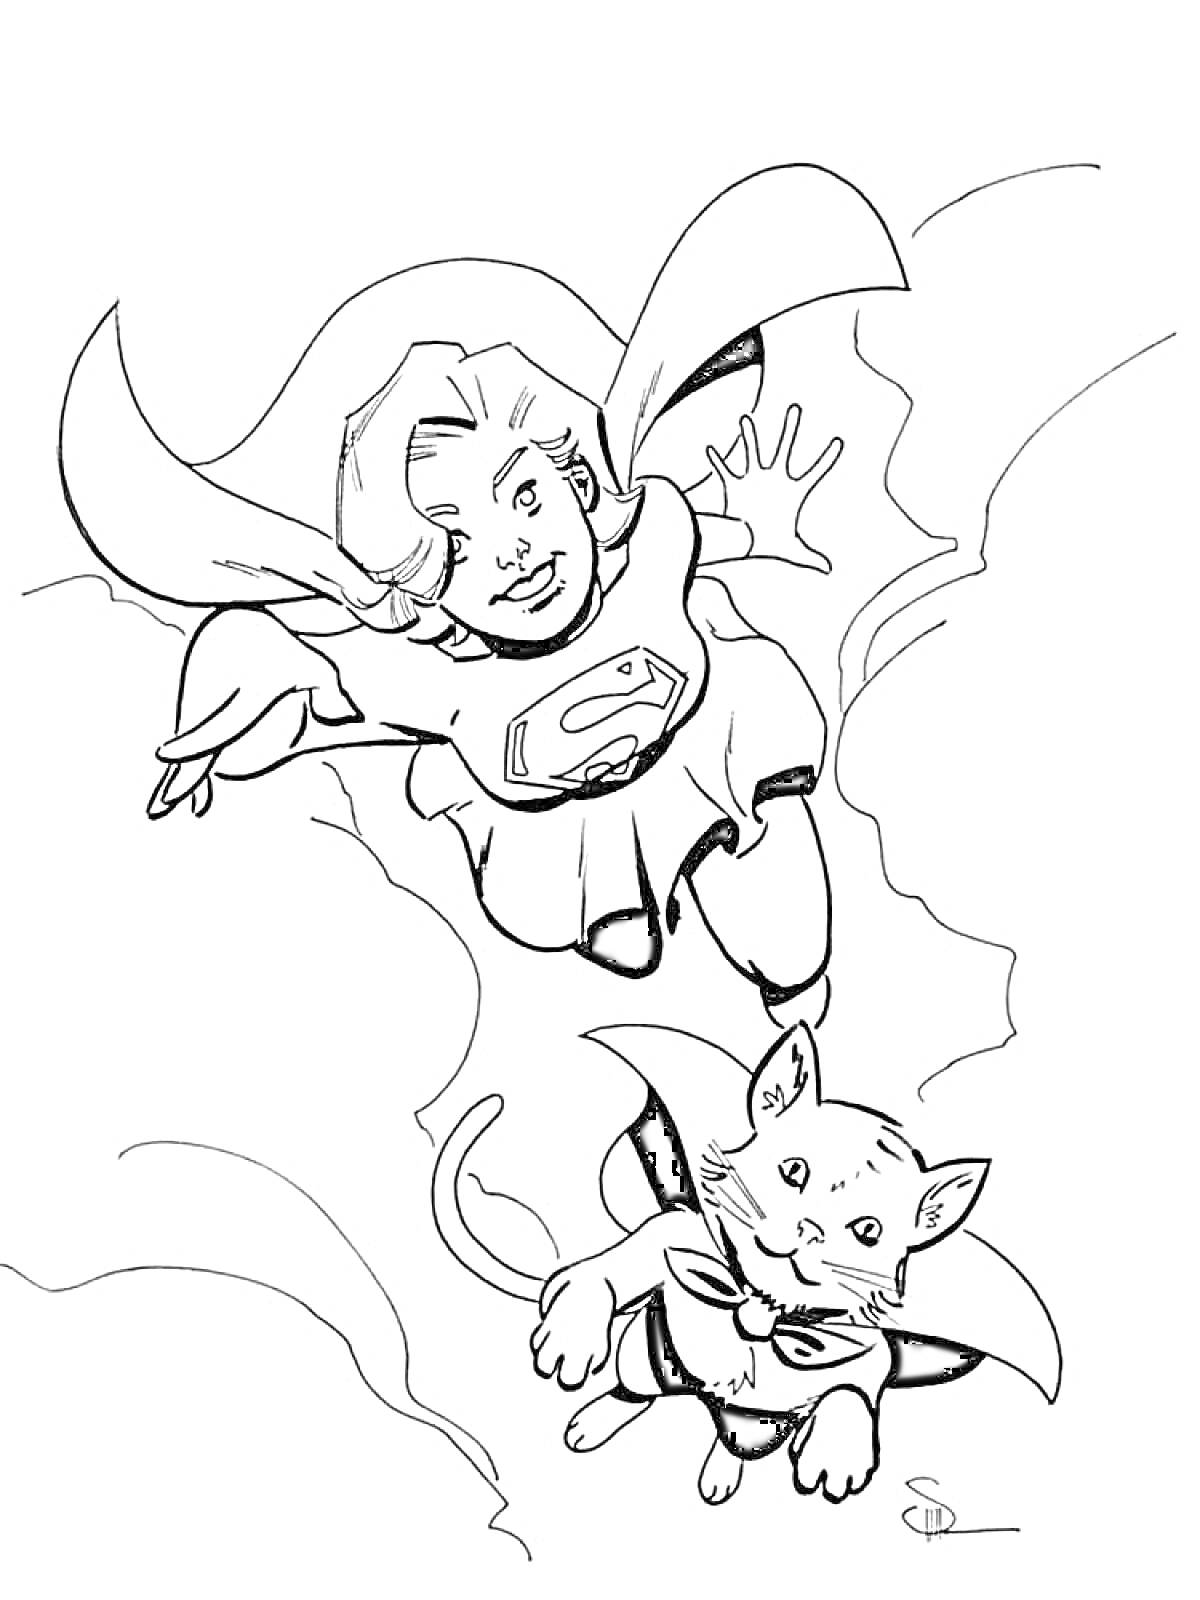 Супергерл летит с кошкой в плаще